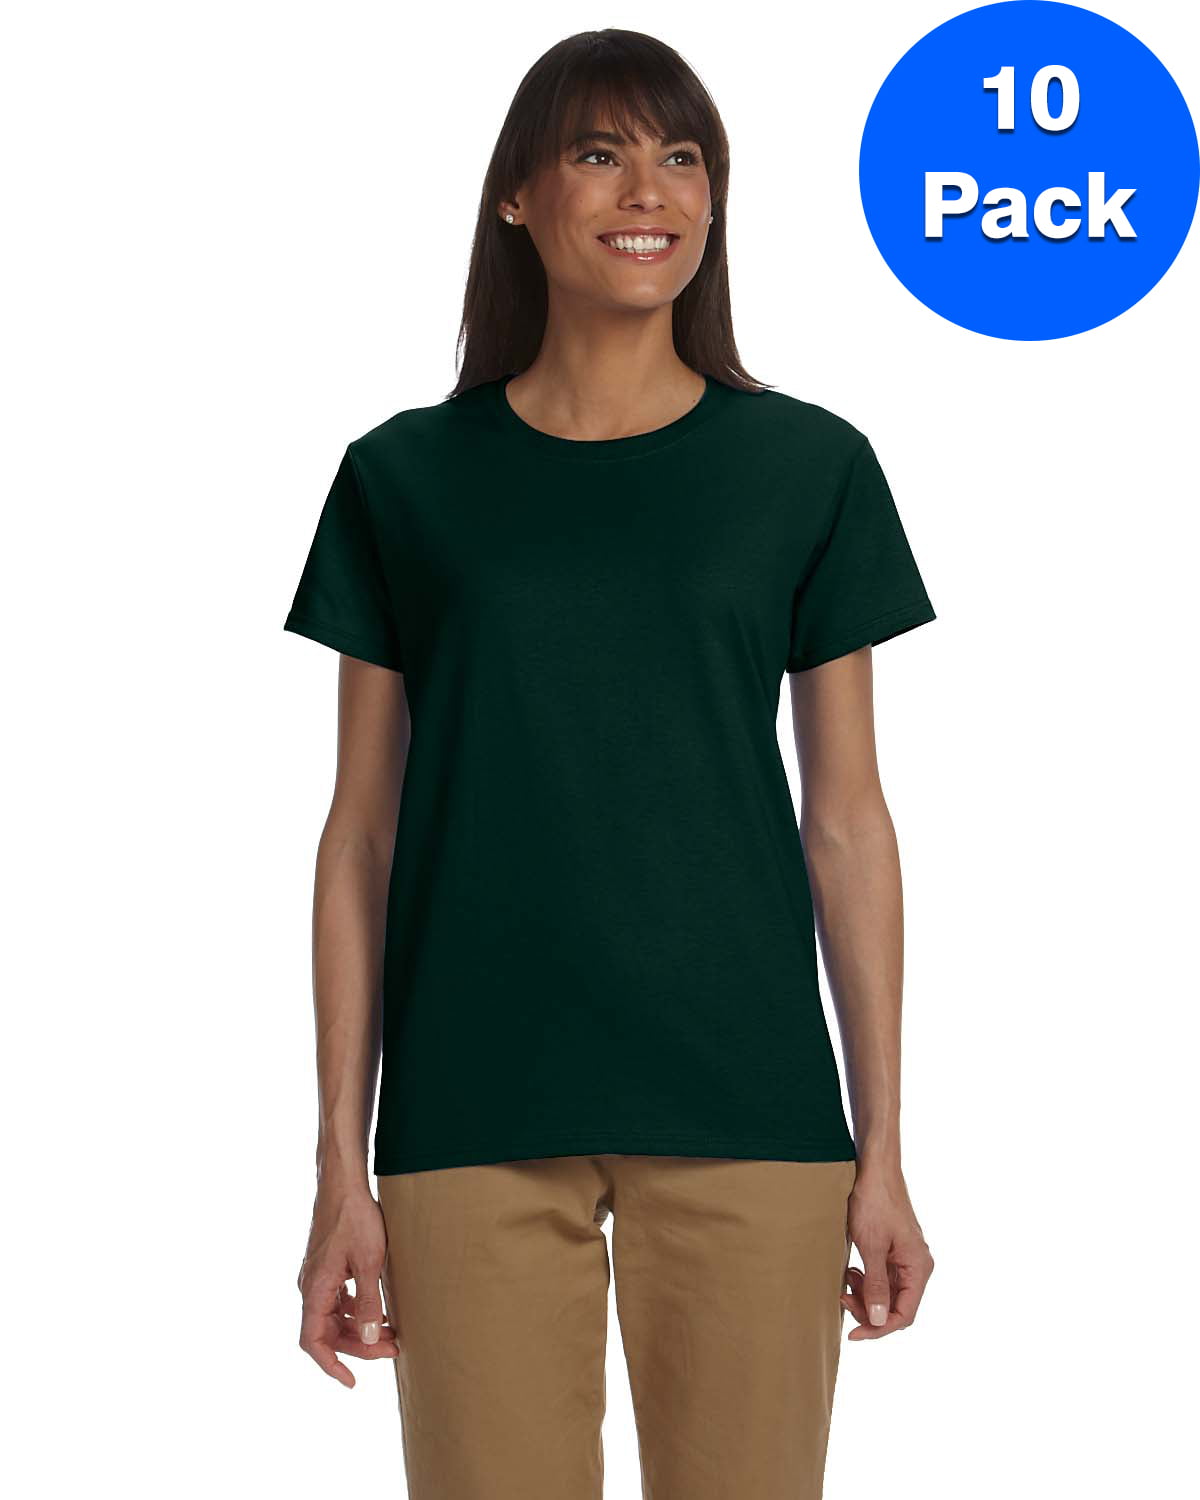 Womens 6.1 oz. Ultra Cotton T-Shirt 10 Pack 